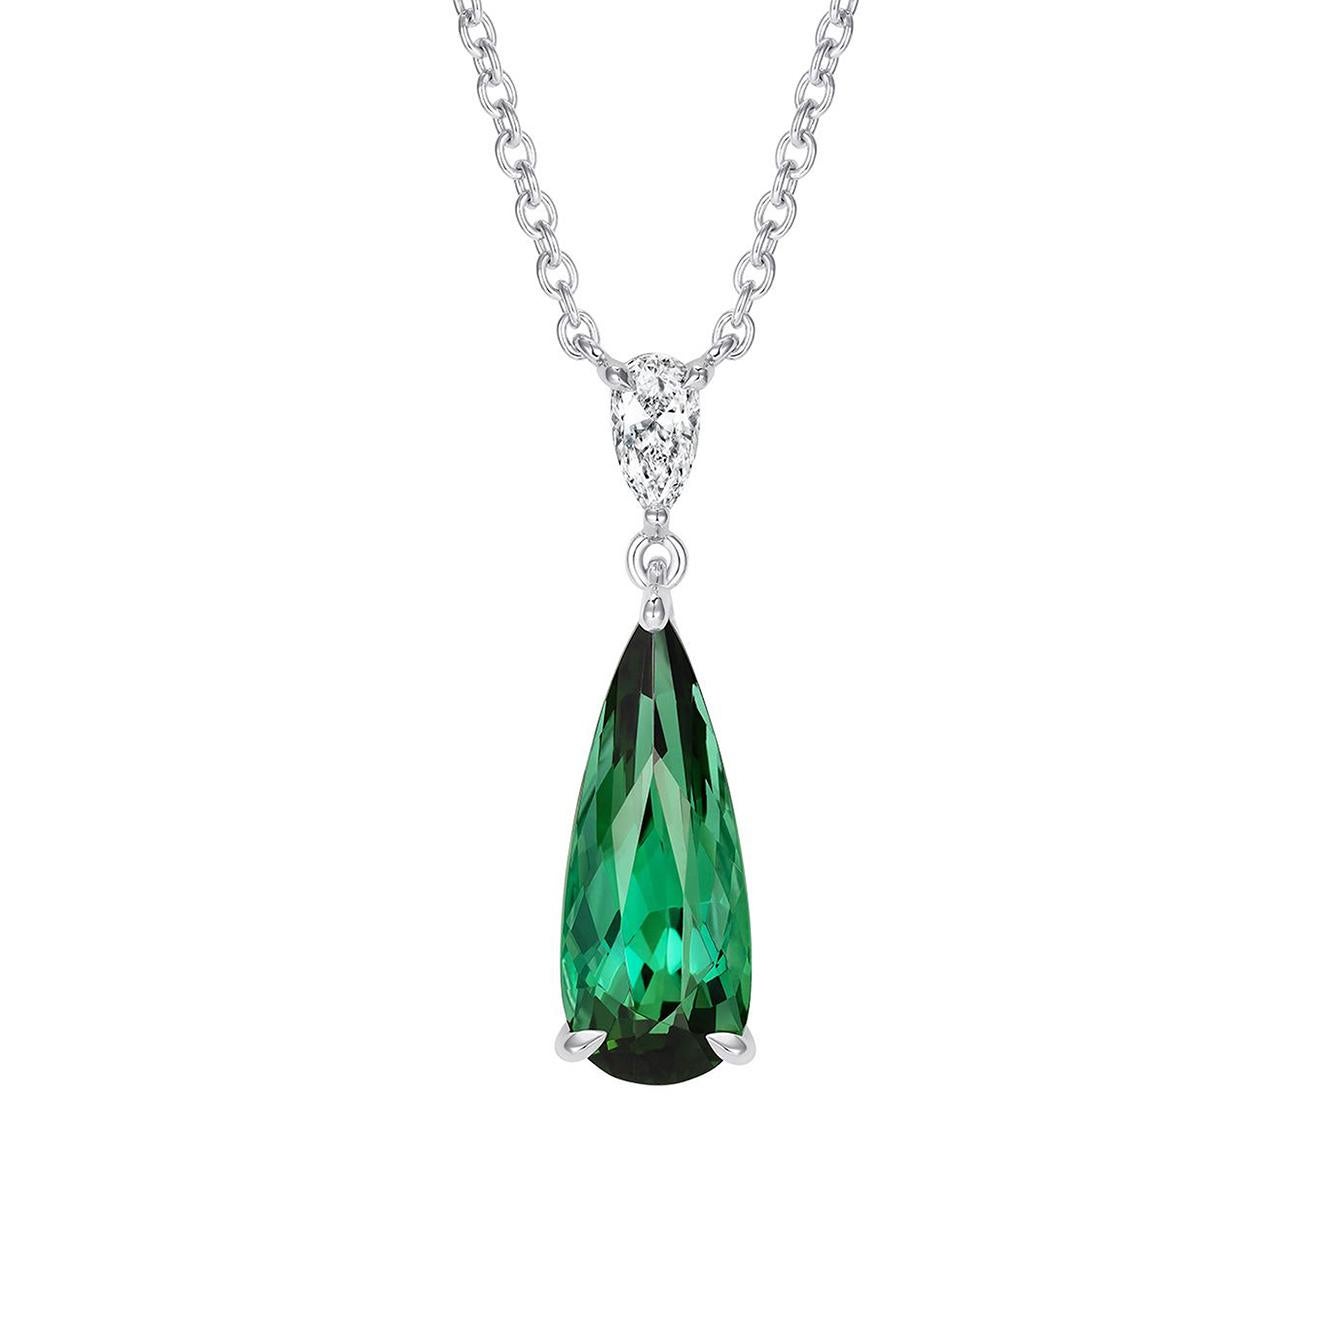 Ein wunderschöner birnenförmiger grüner Turmalin, gefasst unter einem birnenförmigen Diamanten in der einzigartigen Hirsh Wallace-Fassung.

- 2,60 Karat grüner Turmalin in Birnenform
- 0.16 Karat birnenförmiger Diamant
- Hergestellt aus Platin,